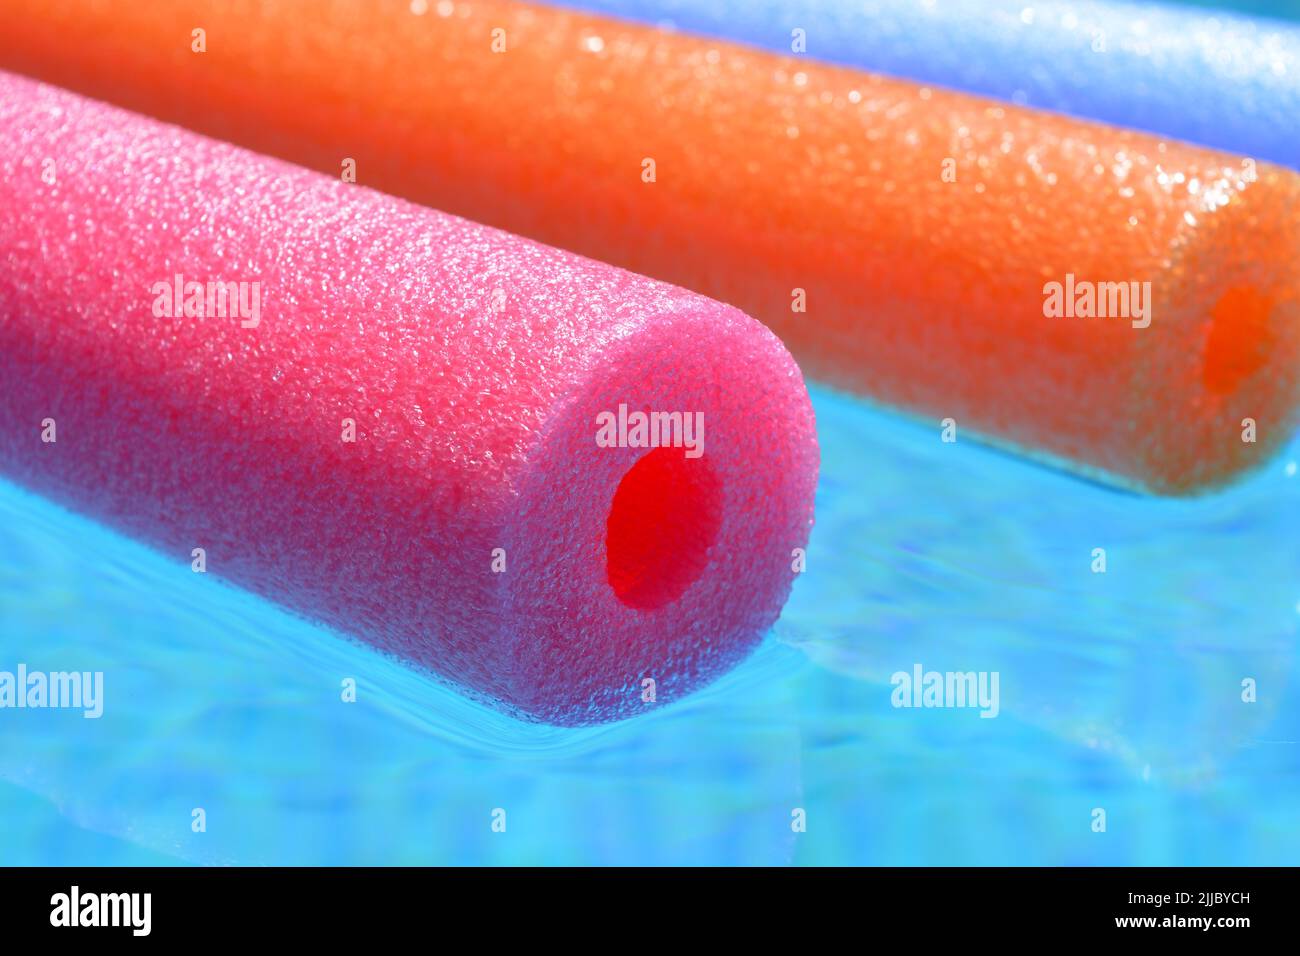 Vibes de verano, fideos coloridos de polietileno rosa, naranja y azul flotando en la piscina Foto de stock